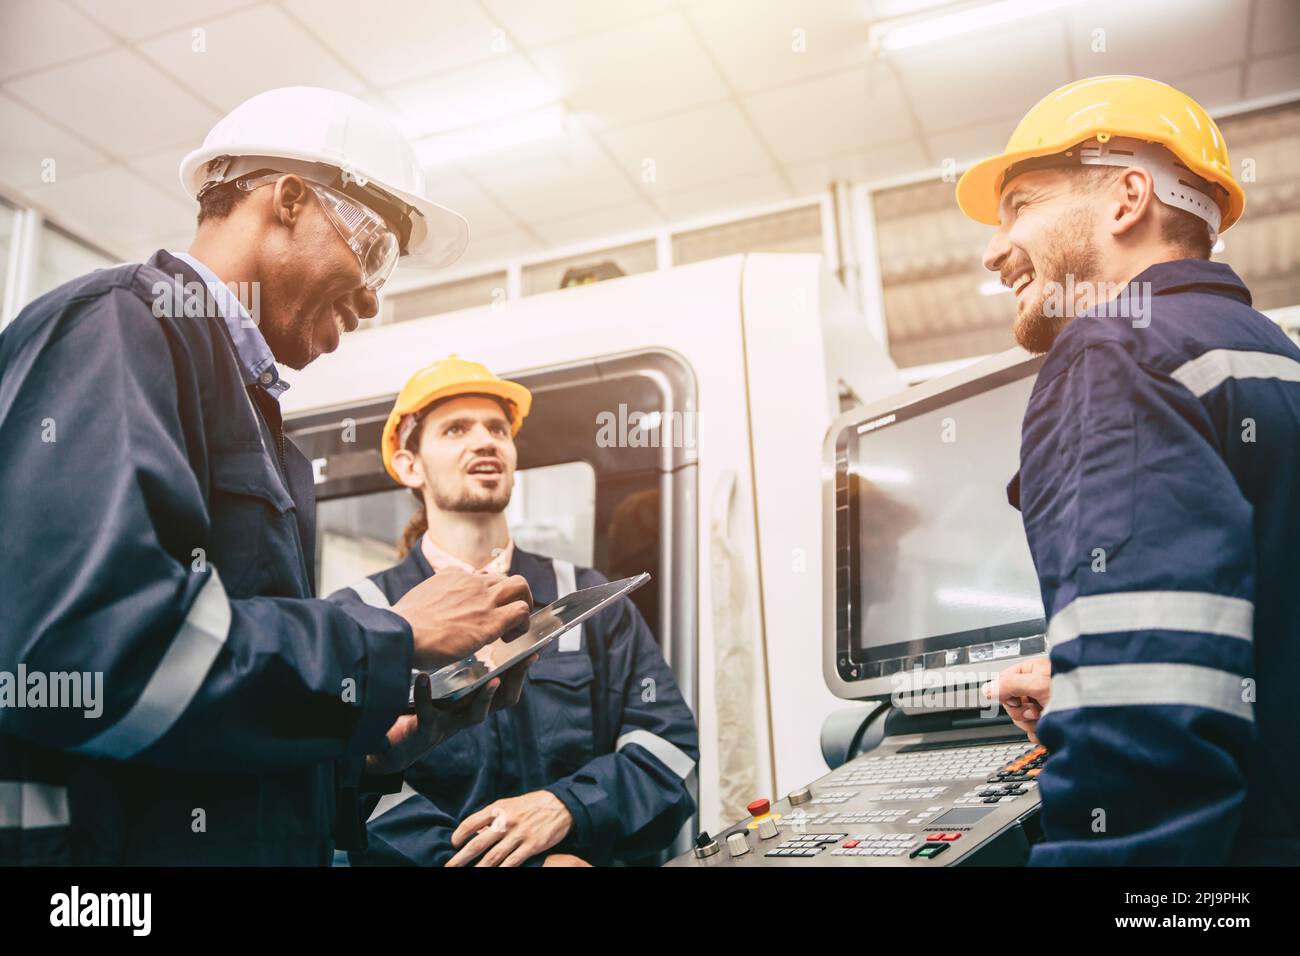 Eine Gruppe männlicher Diversity Engineer-Mitarbeiter genießt es, sich zu entspannen, fröhliche Scherze zu erzählen, lustig zu reden und lachen Freund am Fabrikarbeitsplatz Stockfoto